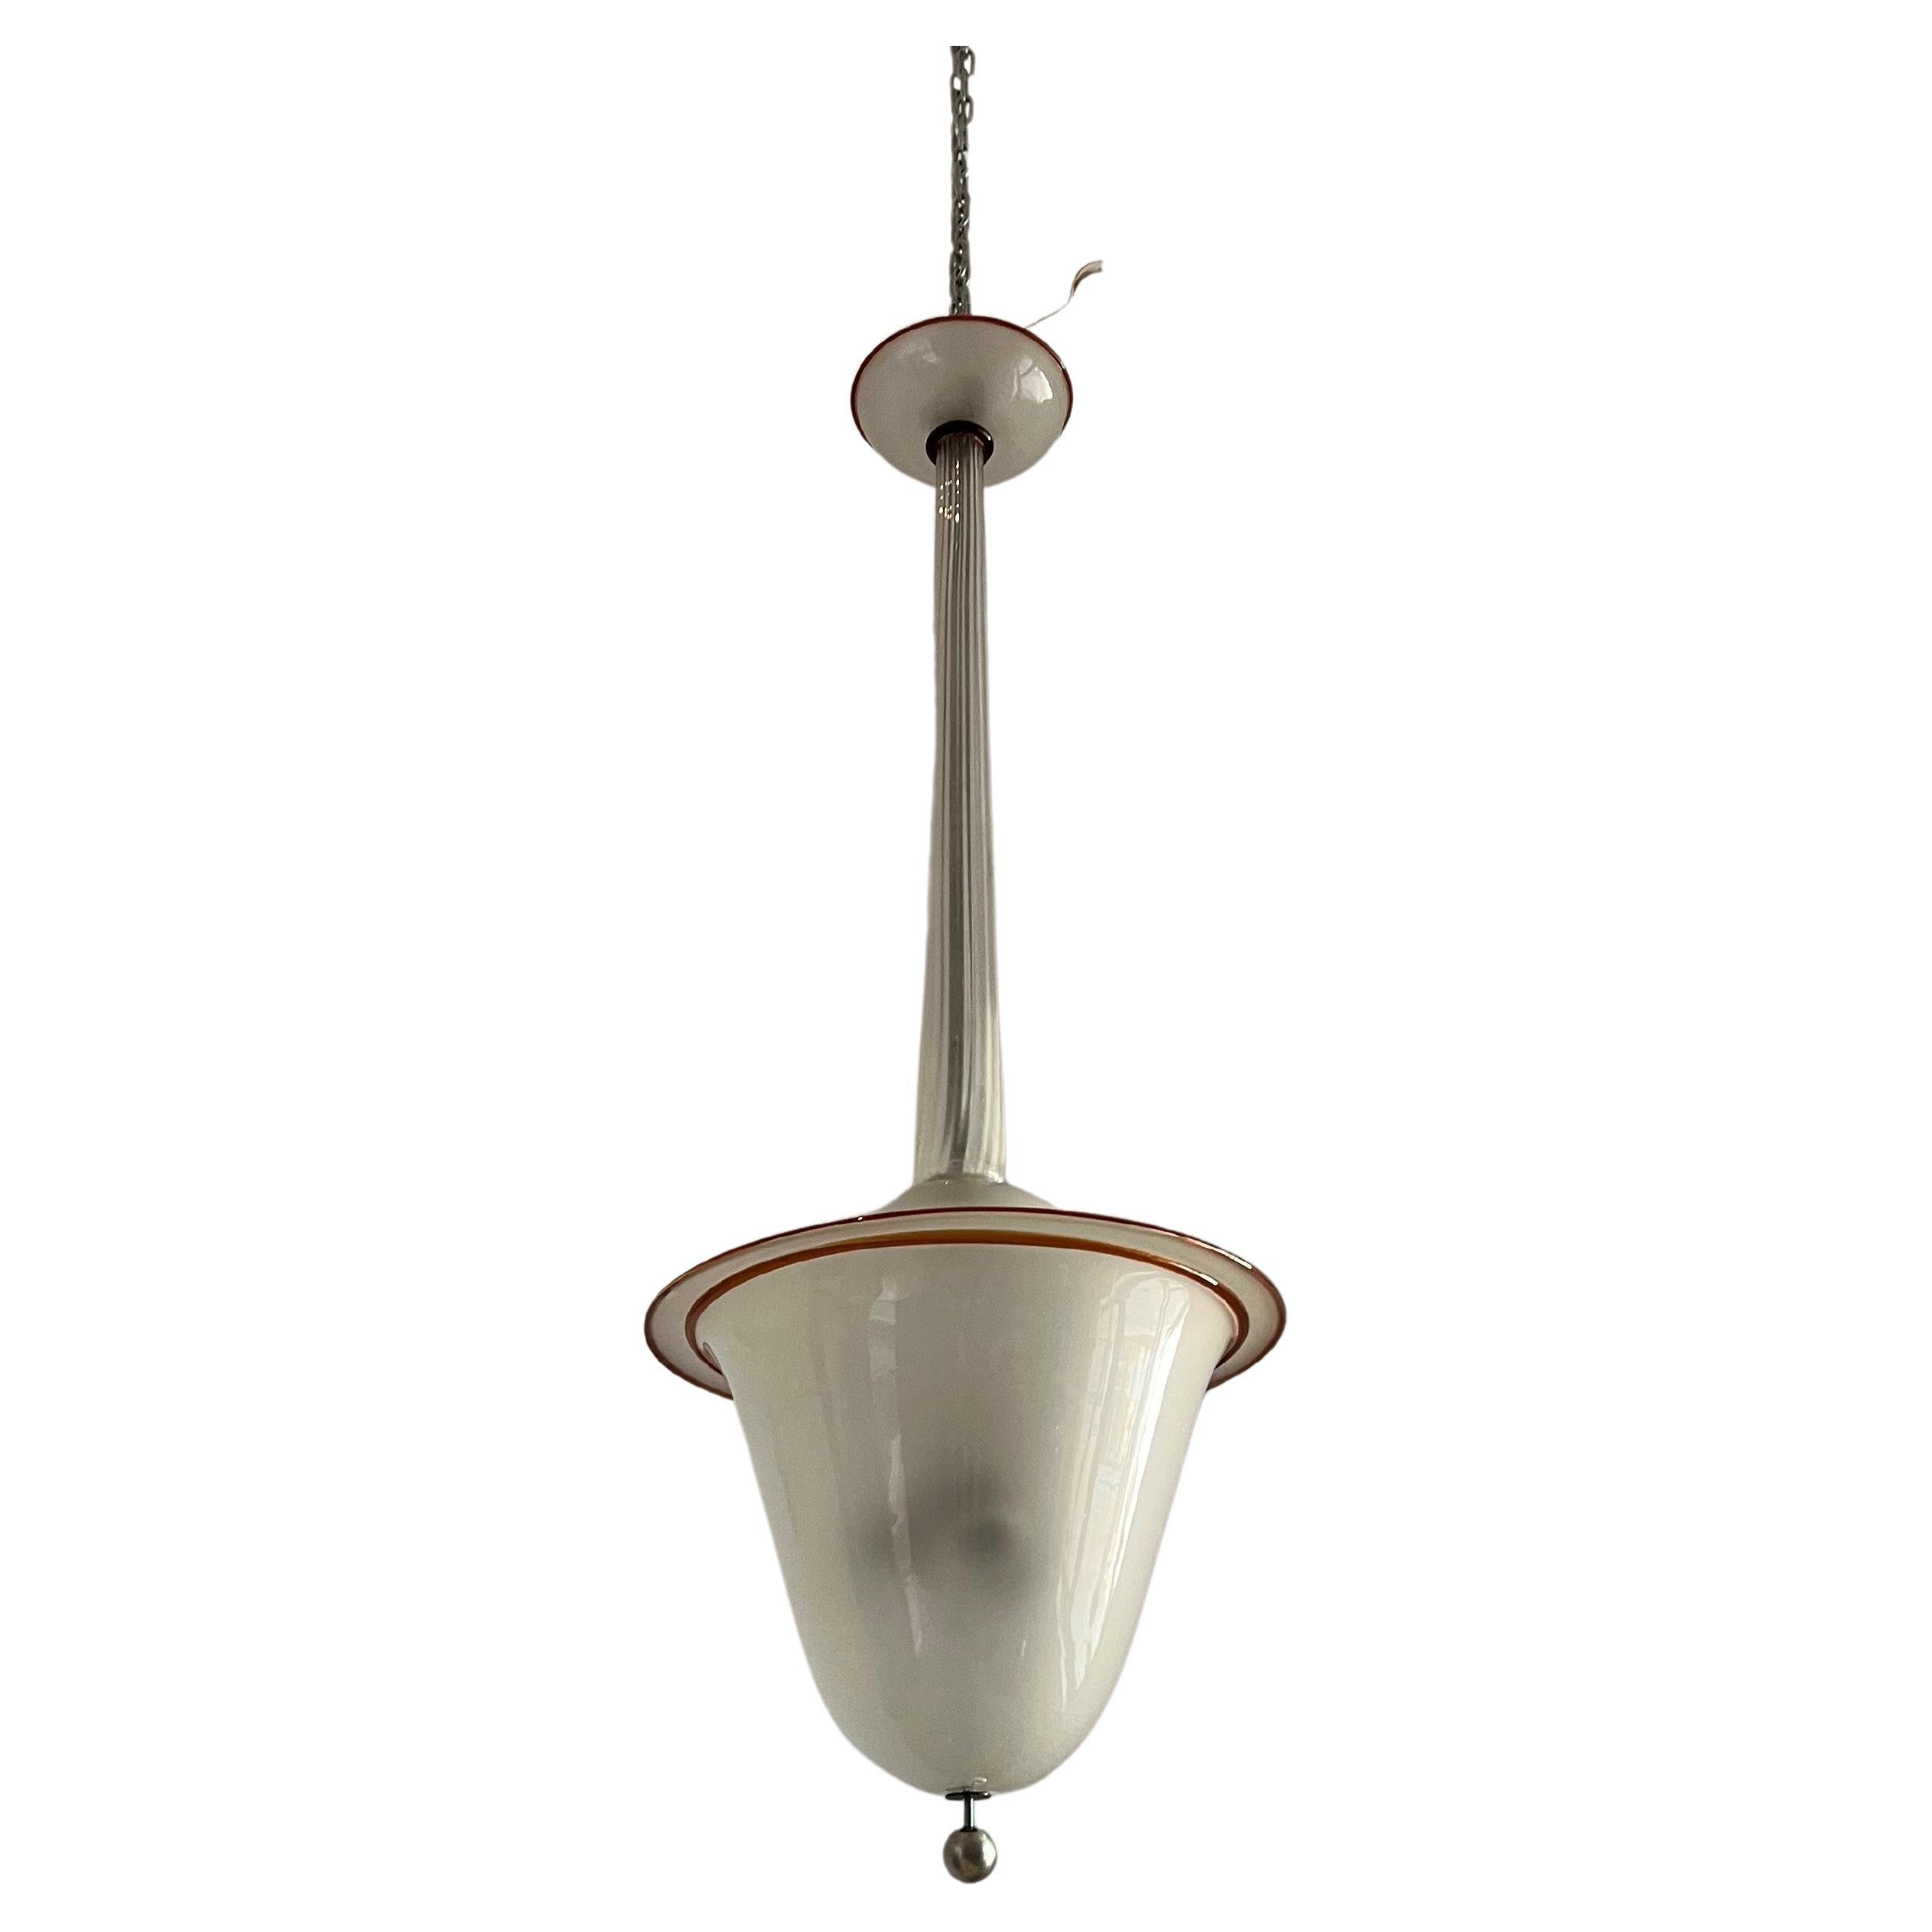 Art Deco Lantern designed by Martinuzzi for Venini in Murano Glass, Italy 1929